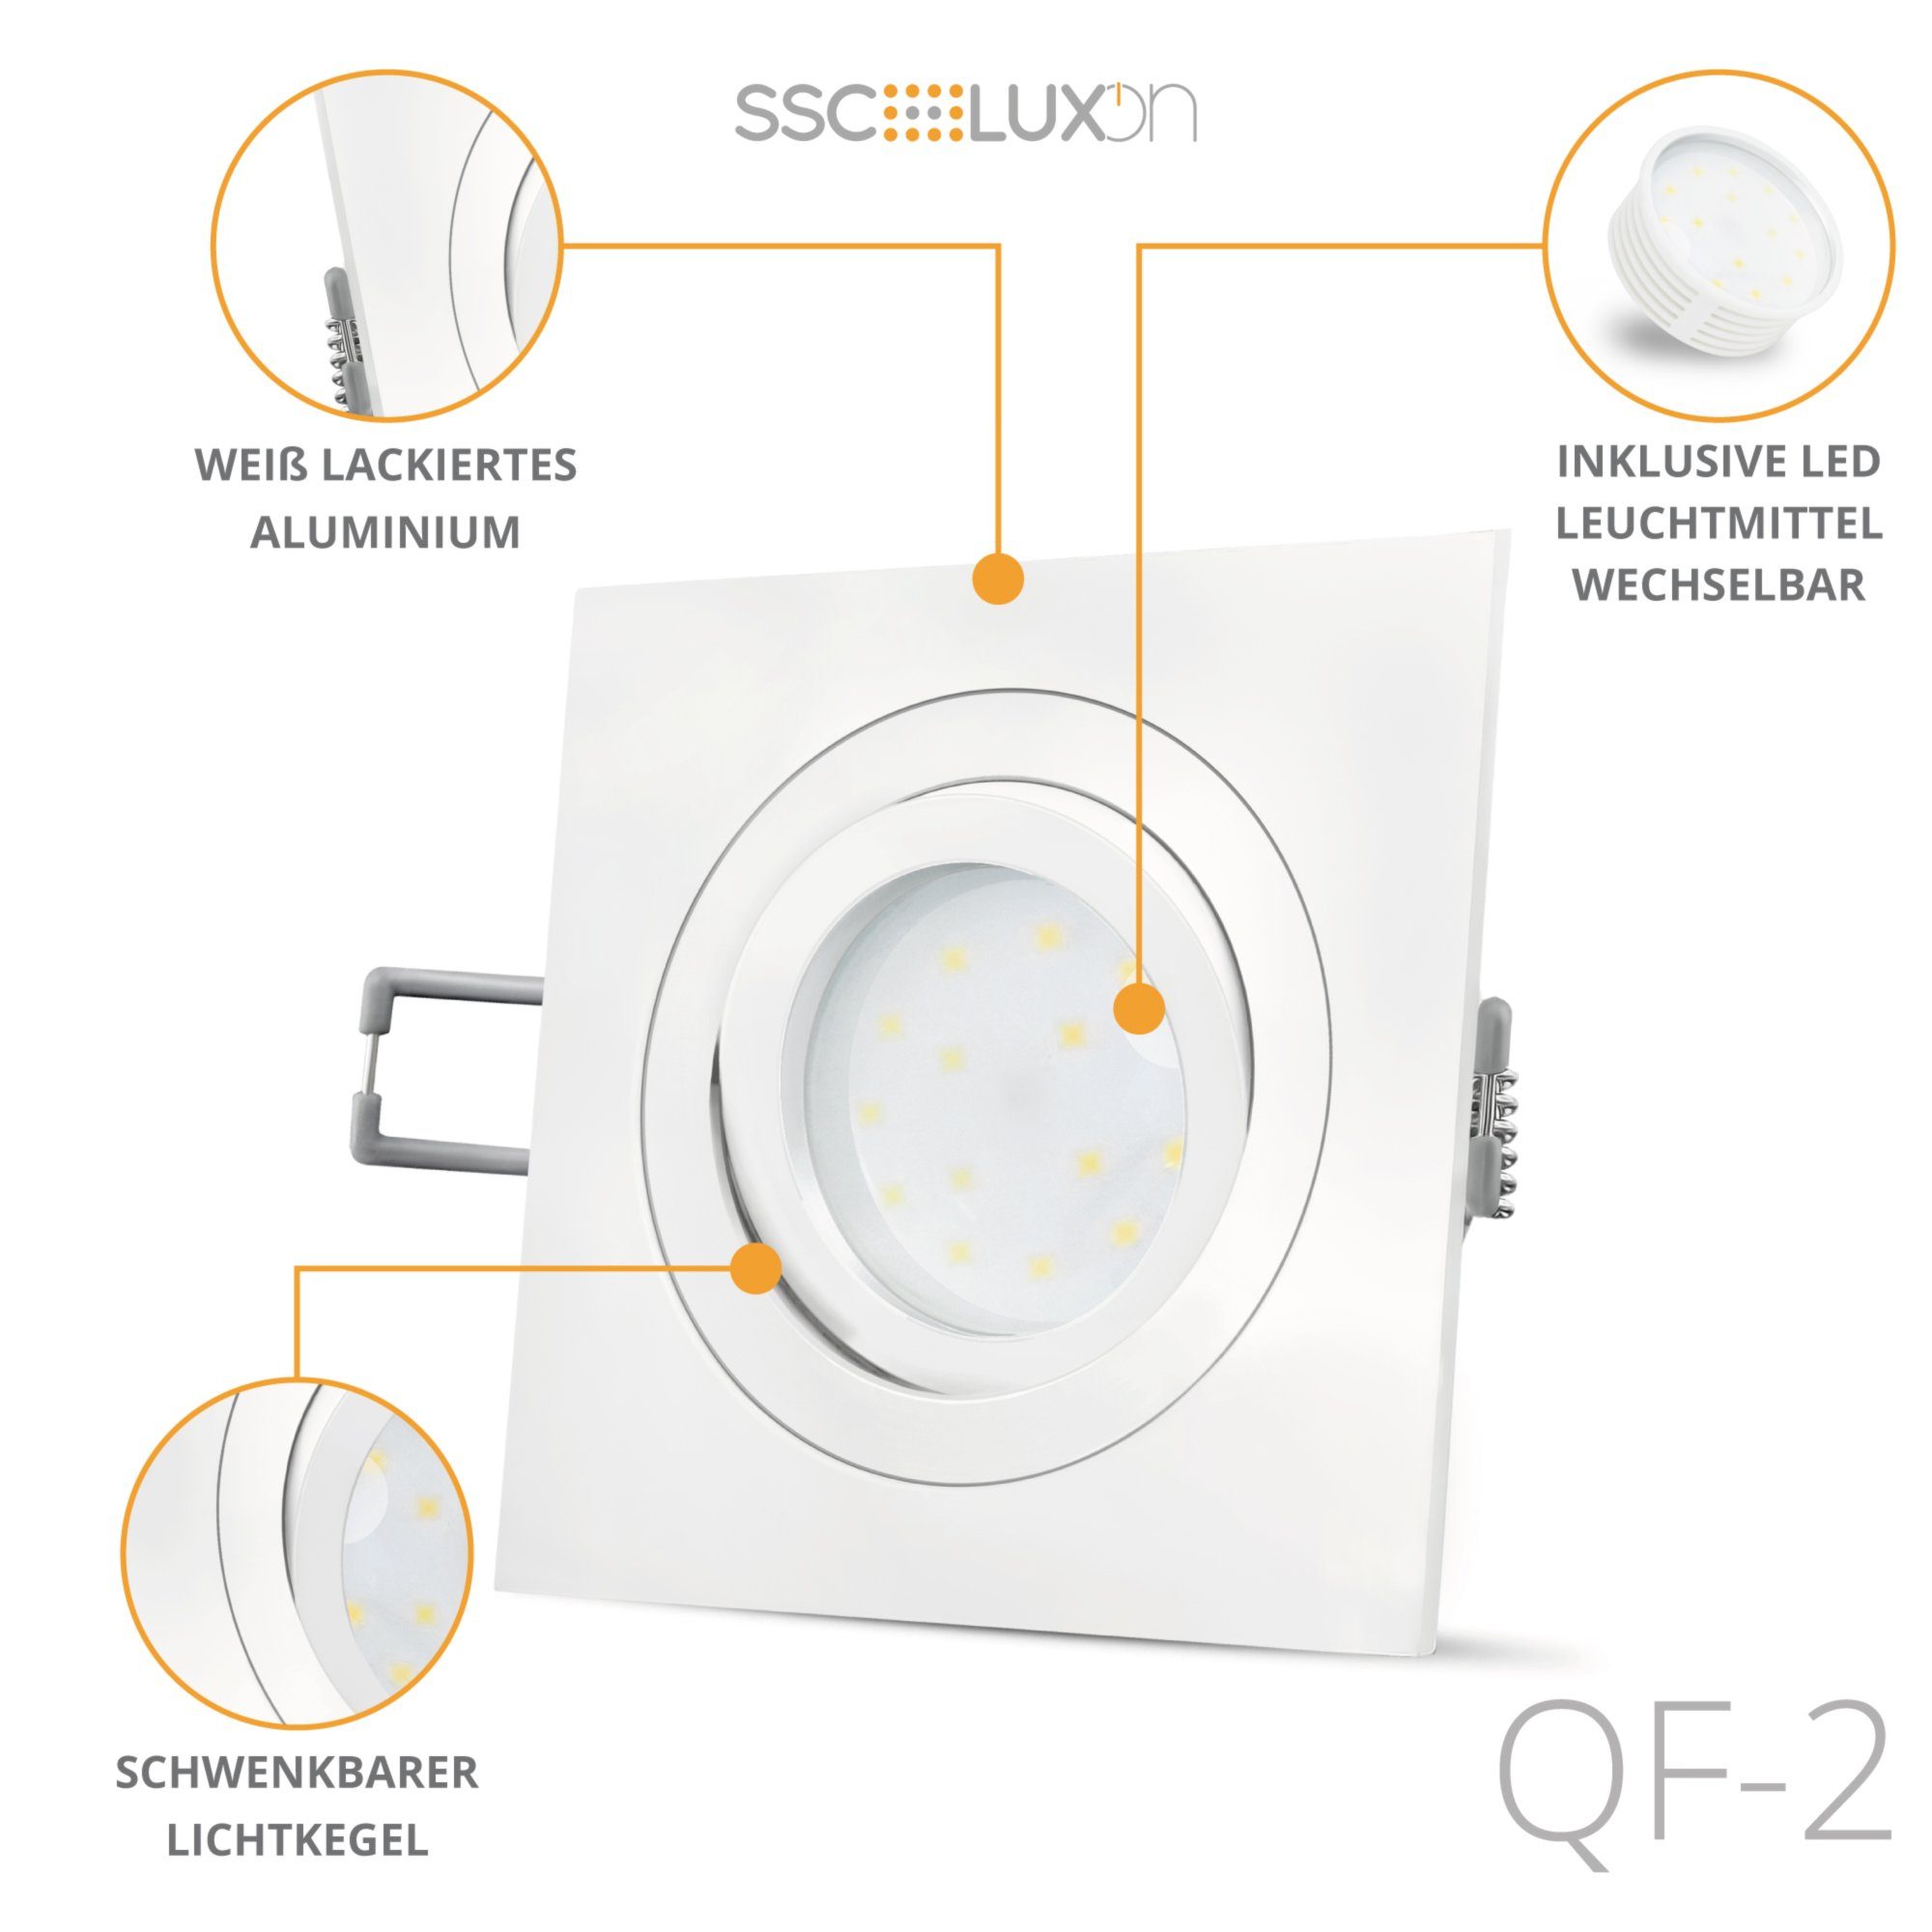 SSC-LUXon LED Einbaustrahler QF-2 LED 5W, LED & Einbauleuchte Warmweiß mit weiss, schwenkbar Modul flach